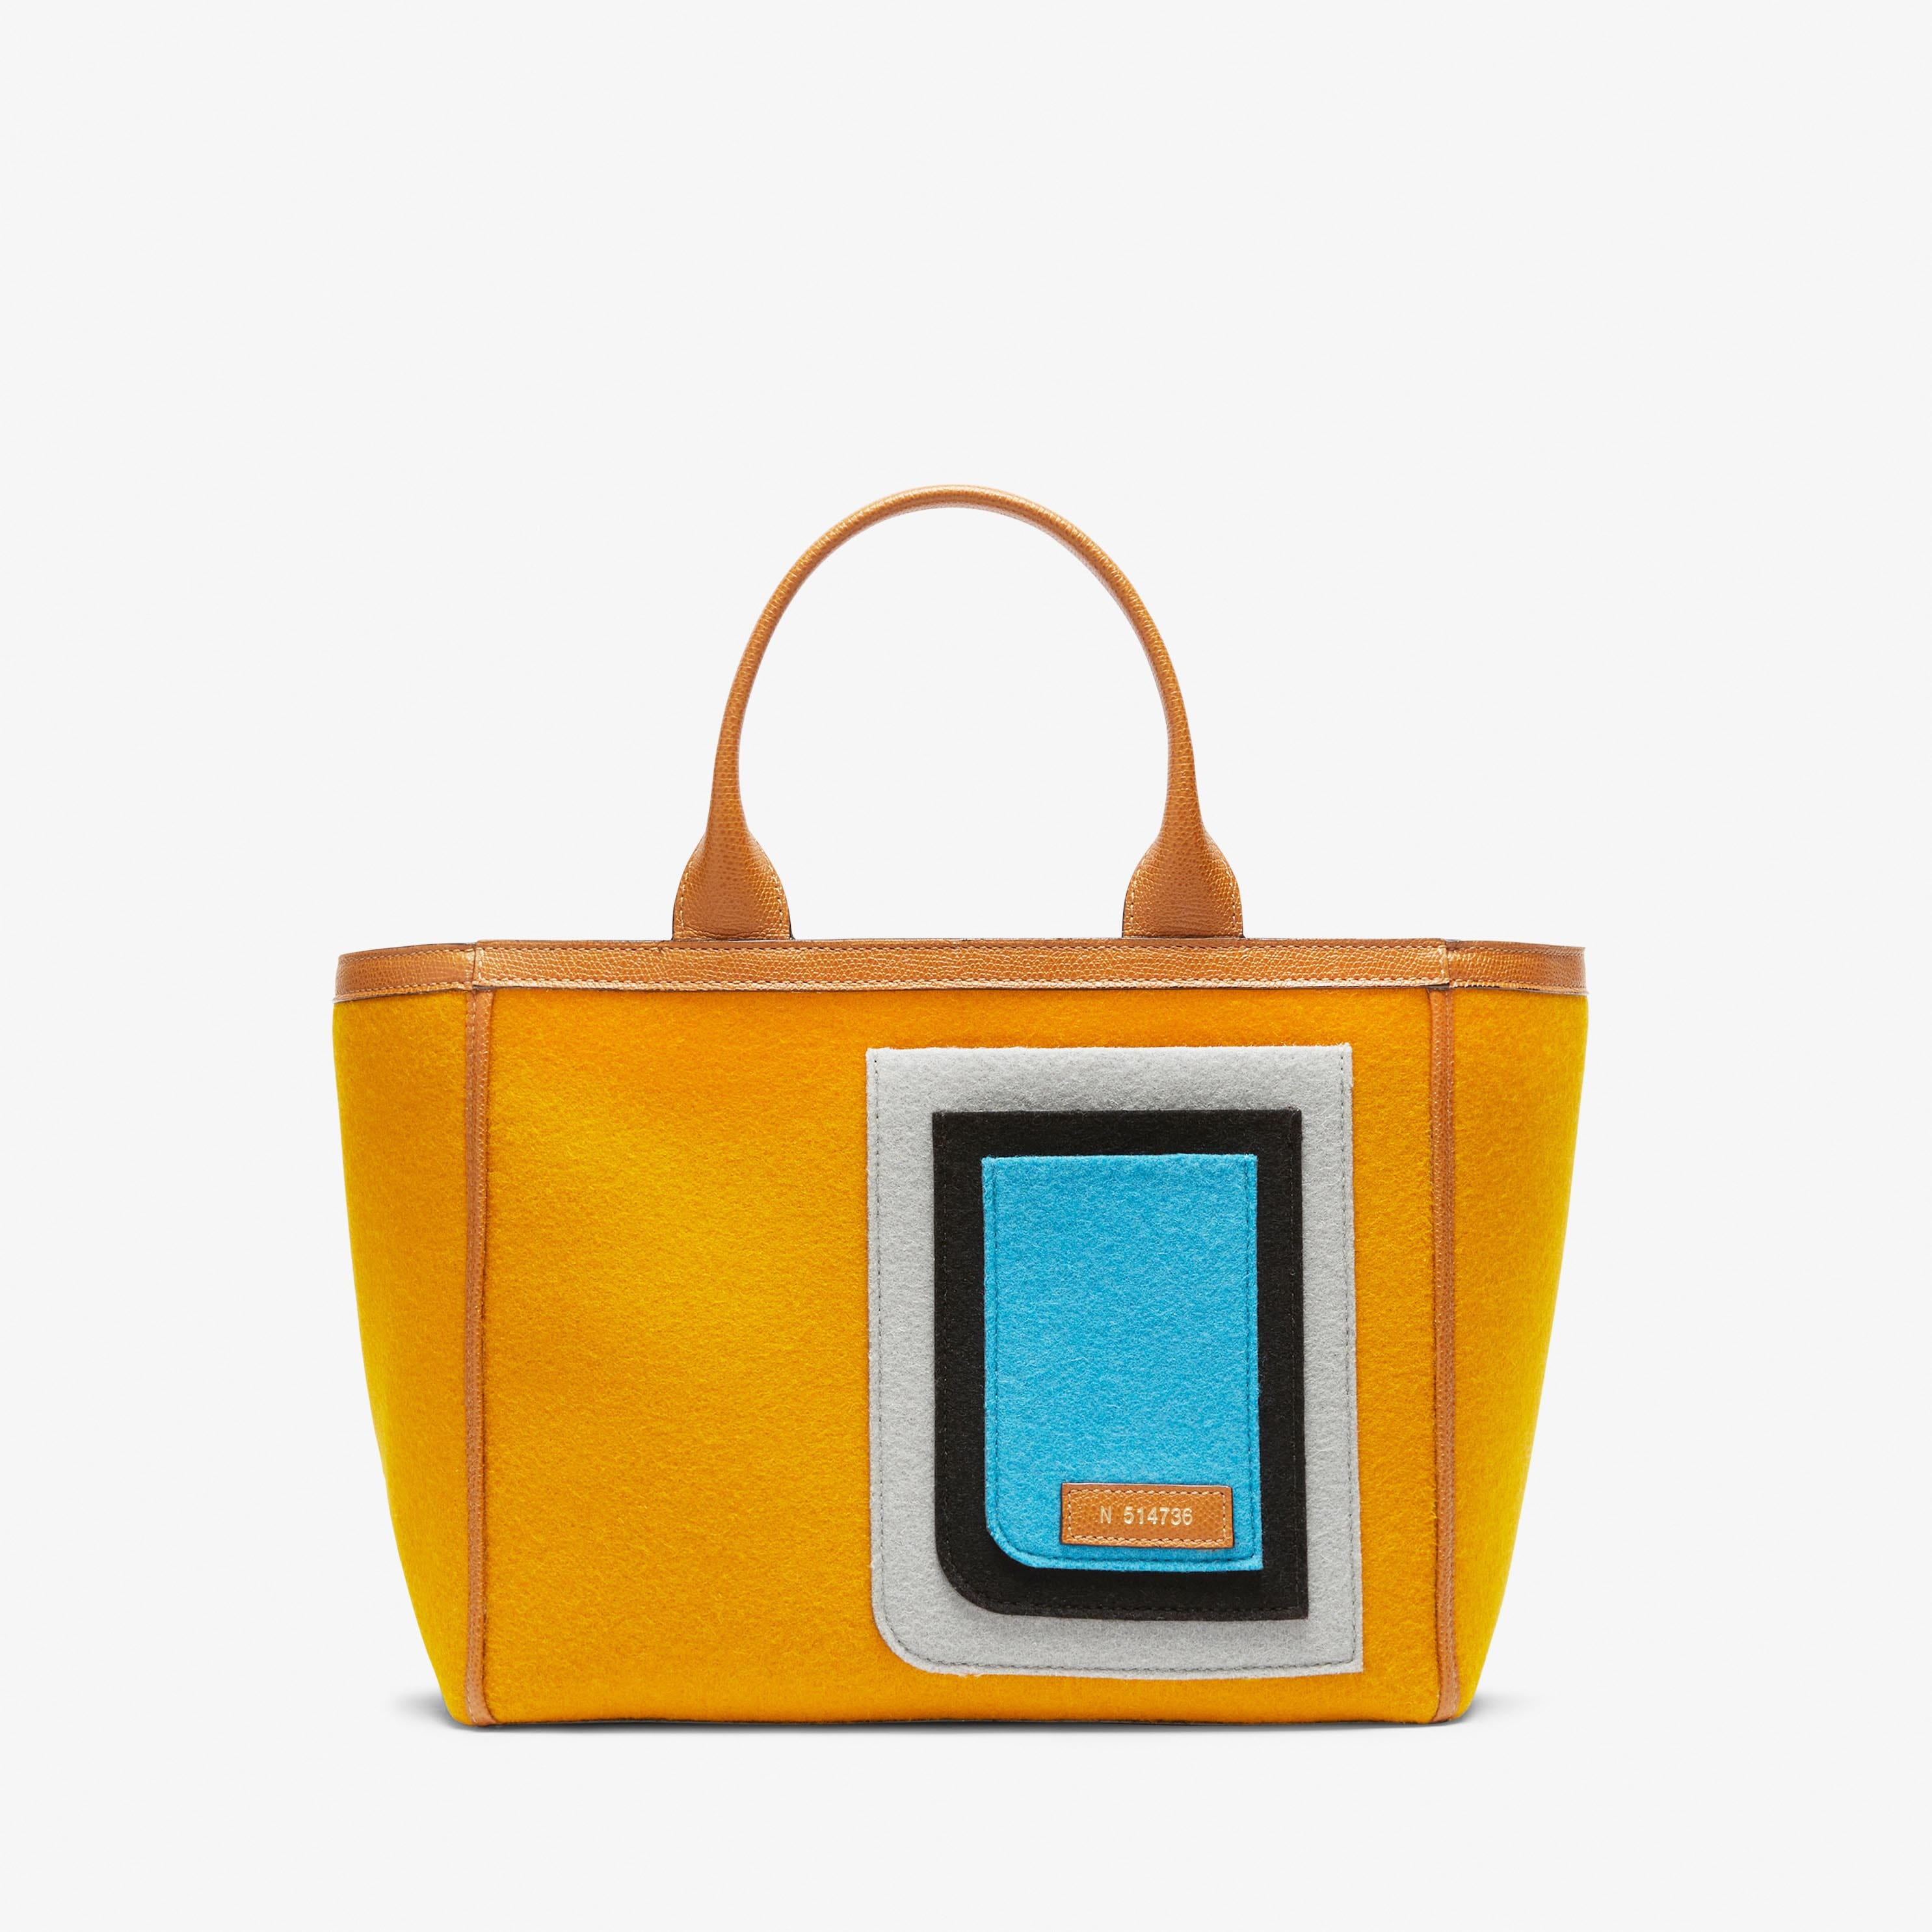 H-Brands Donna Accessori Borse Shopper e tote Borsa The The Large Tote Bag in canvas giallo 